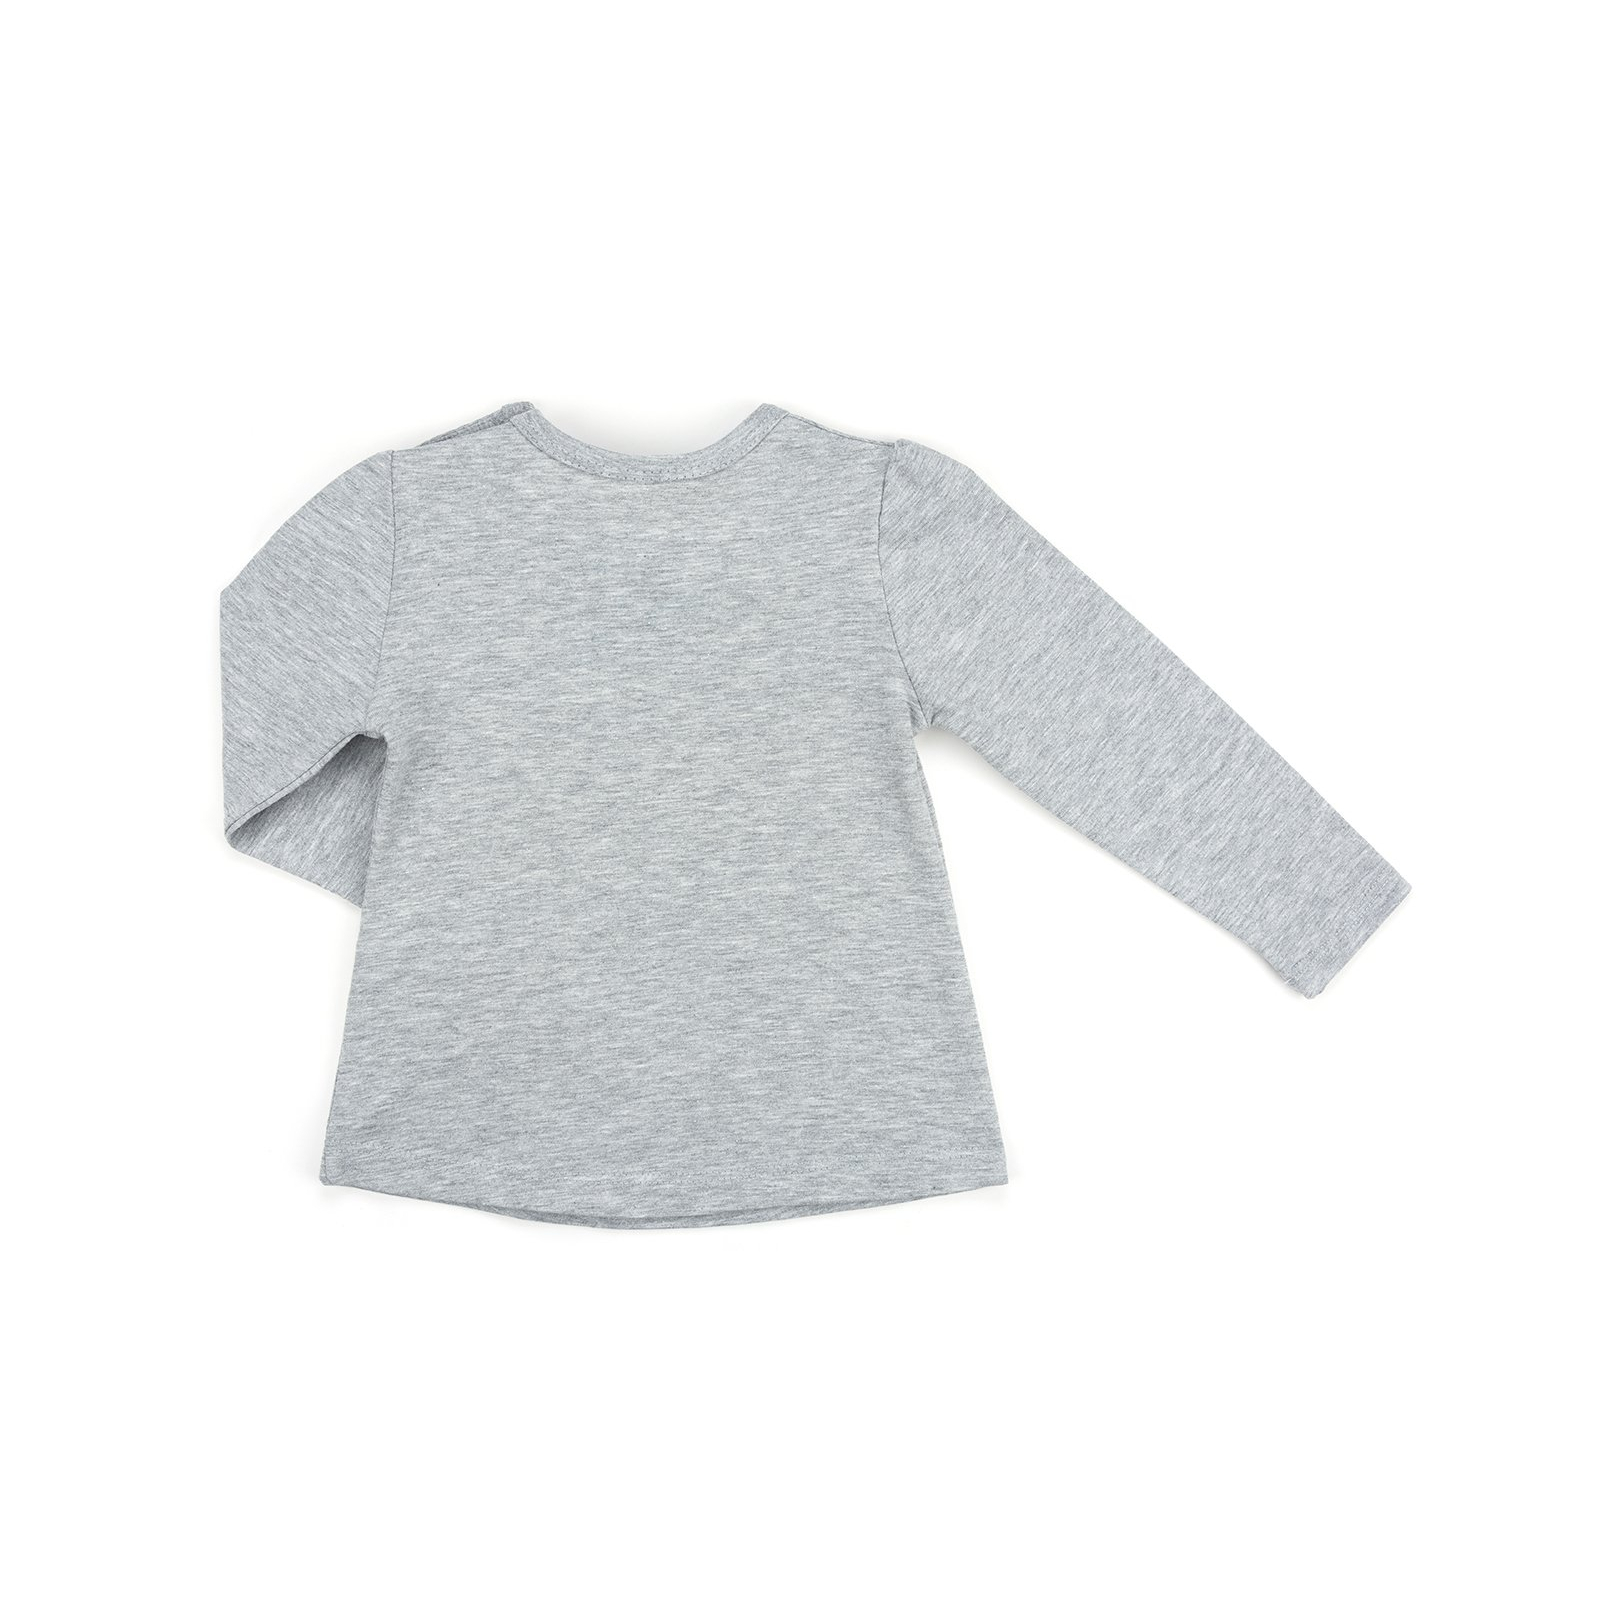 Набір дитячого одягу Breeze з бантиками (10527-74G-gray) зображення 5